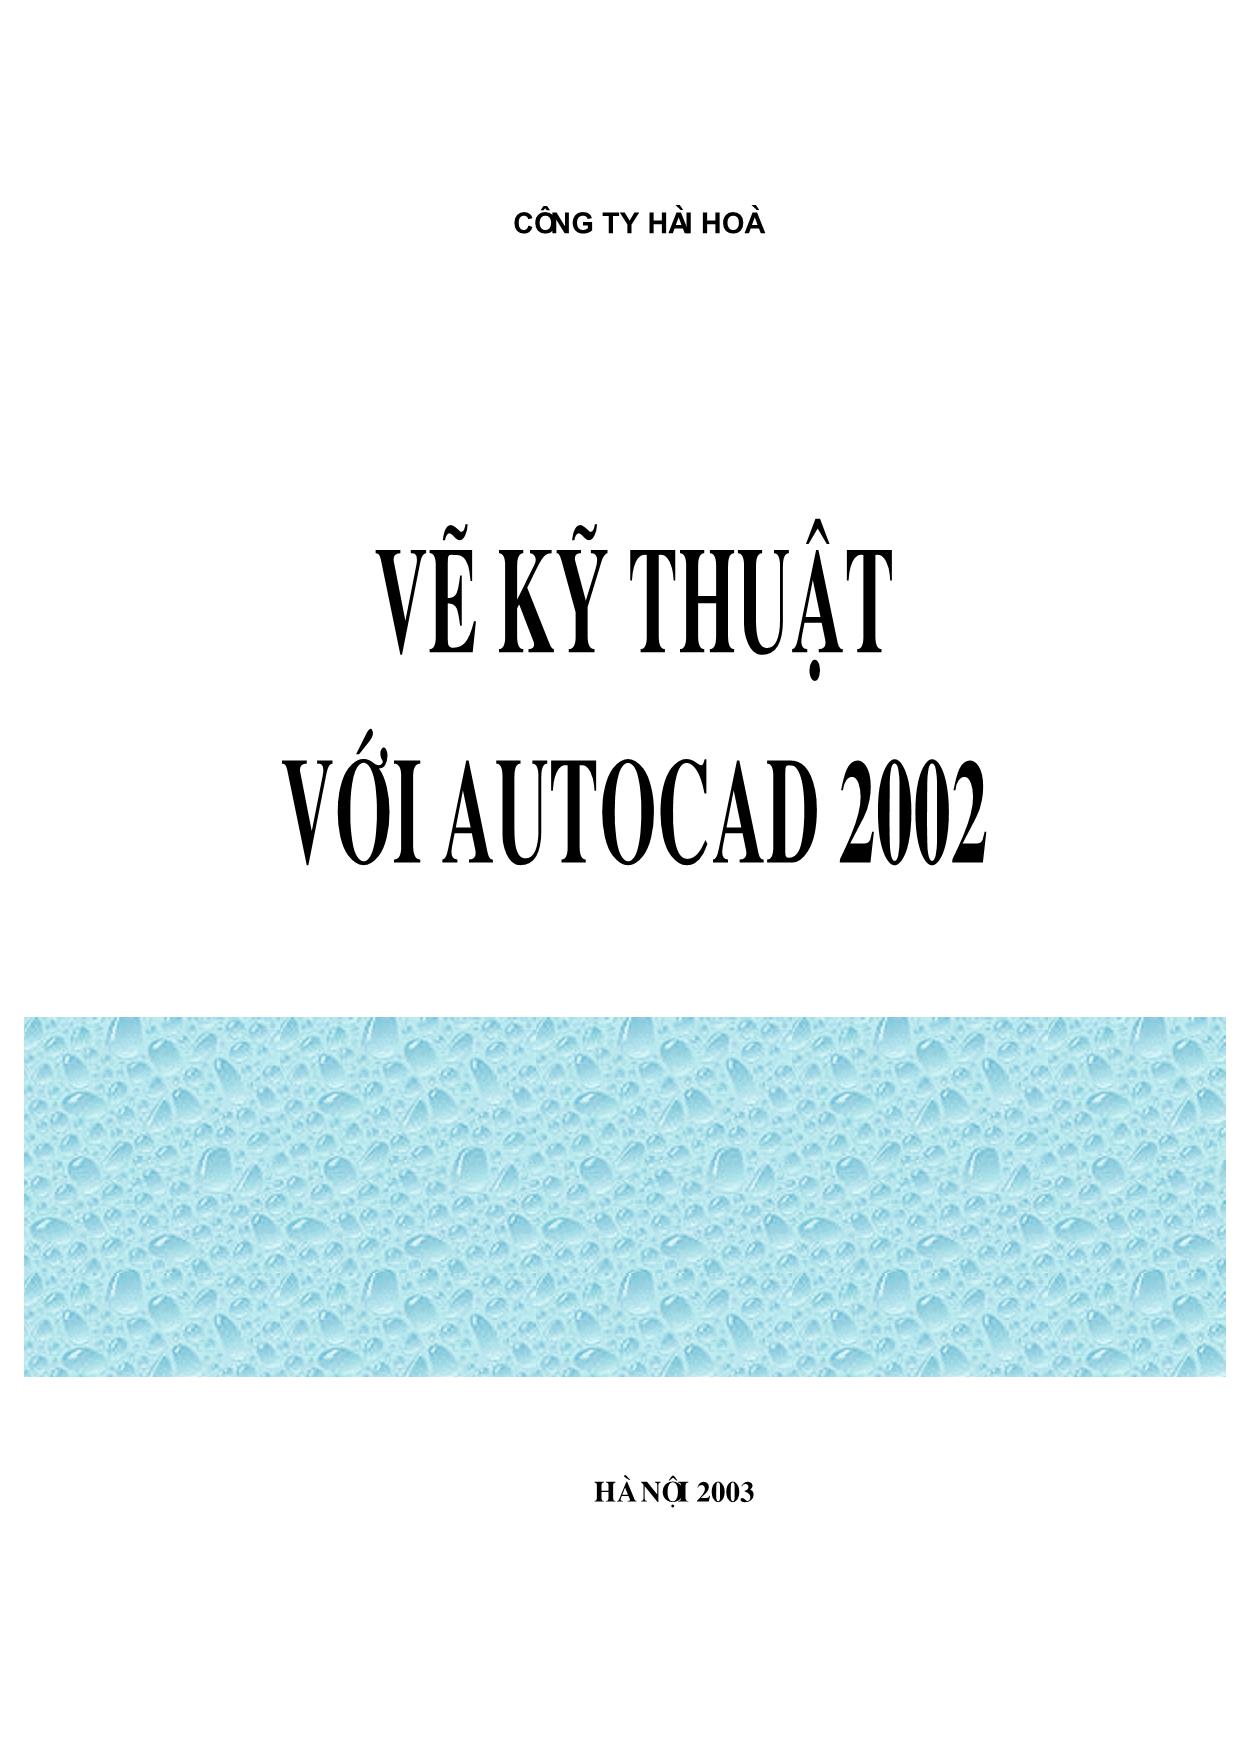 Giáo trình Vẽ kỹ thuật với AutoCAD 2002 trang 2